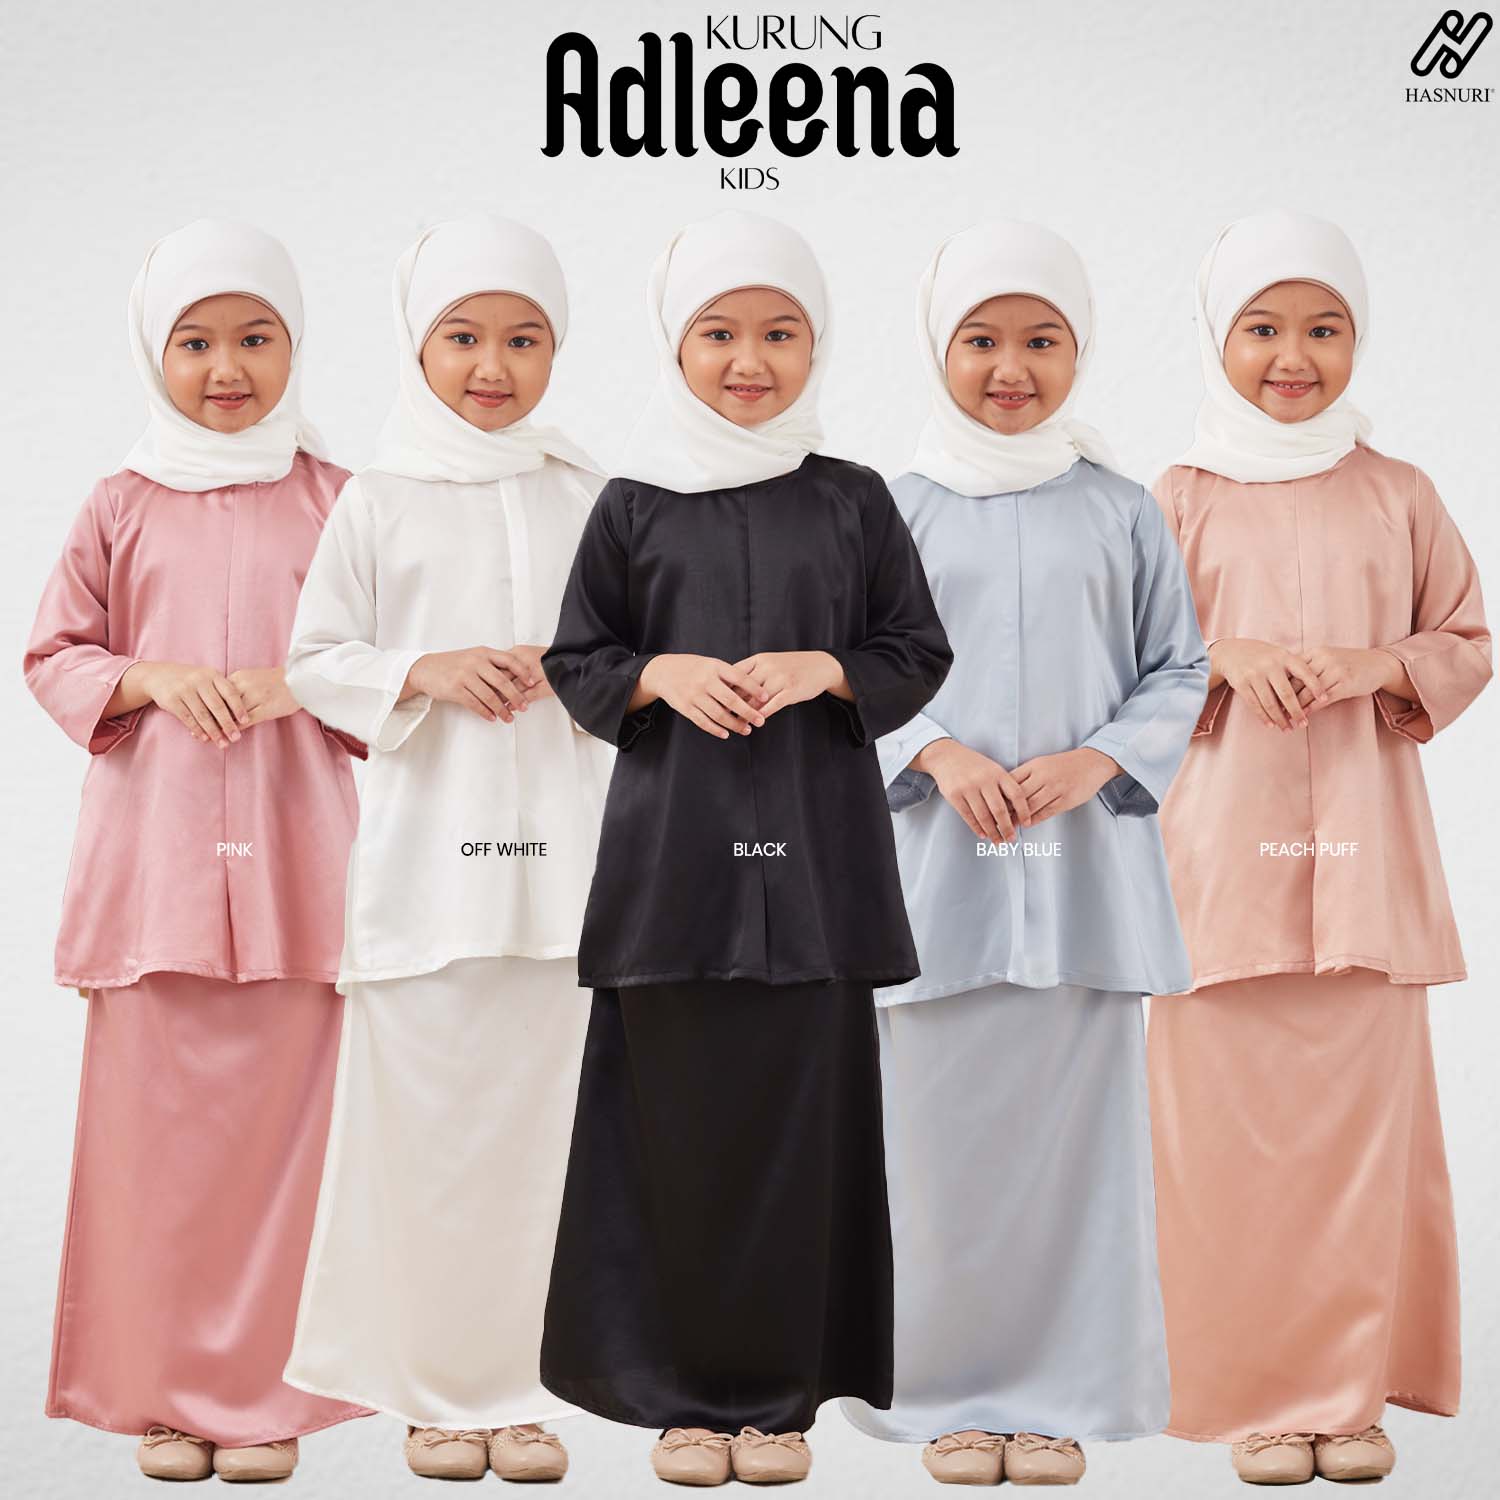 Kurung Adleena Kids - Off White